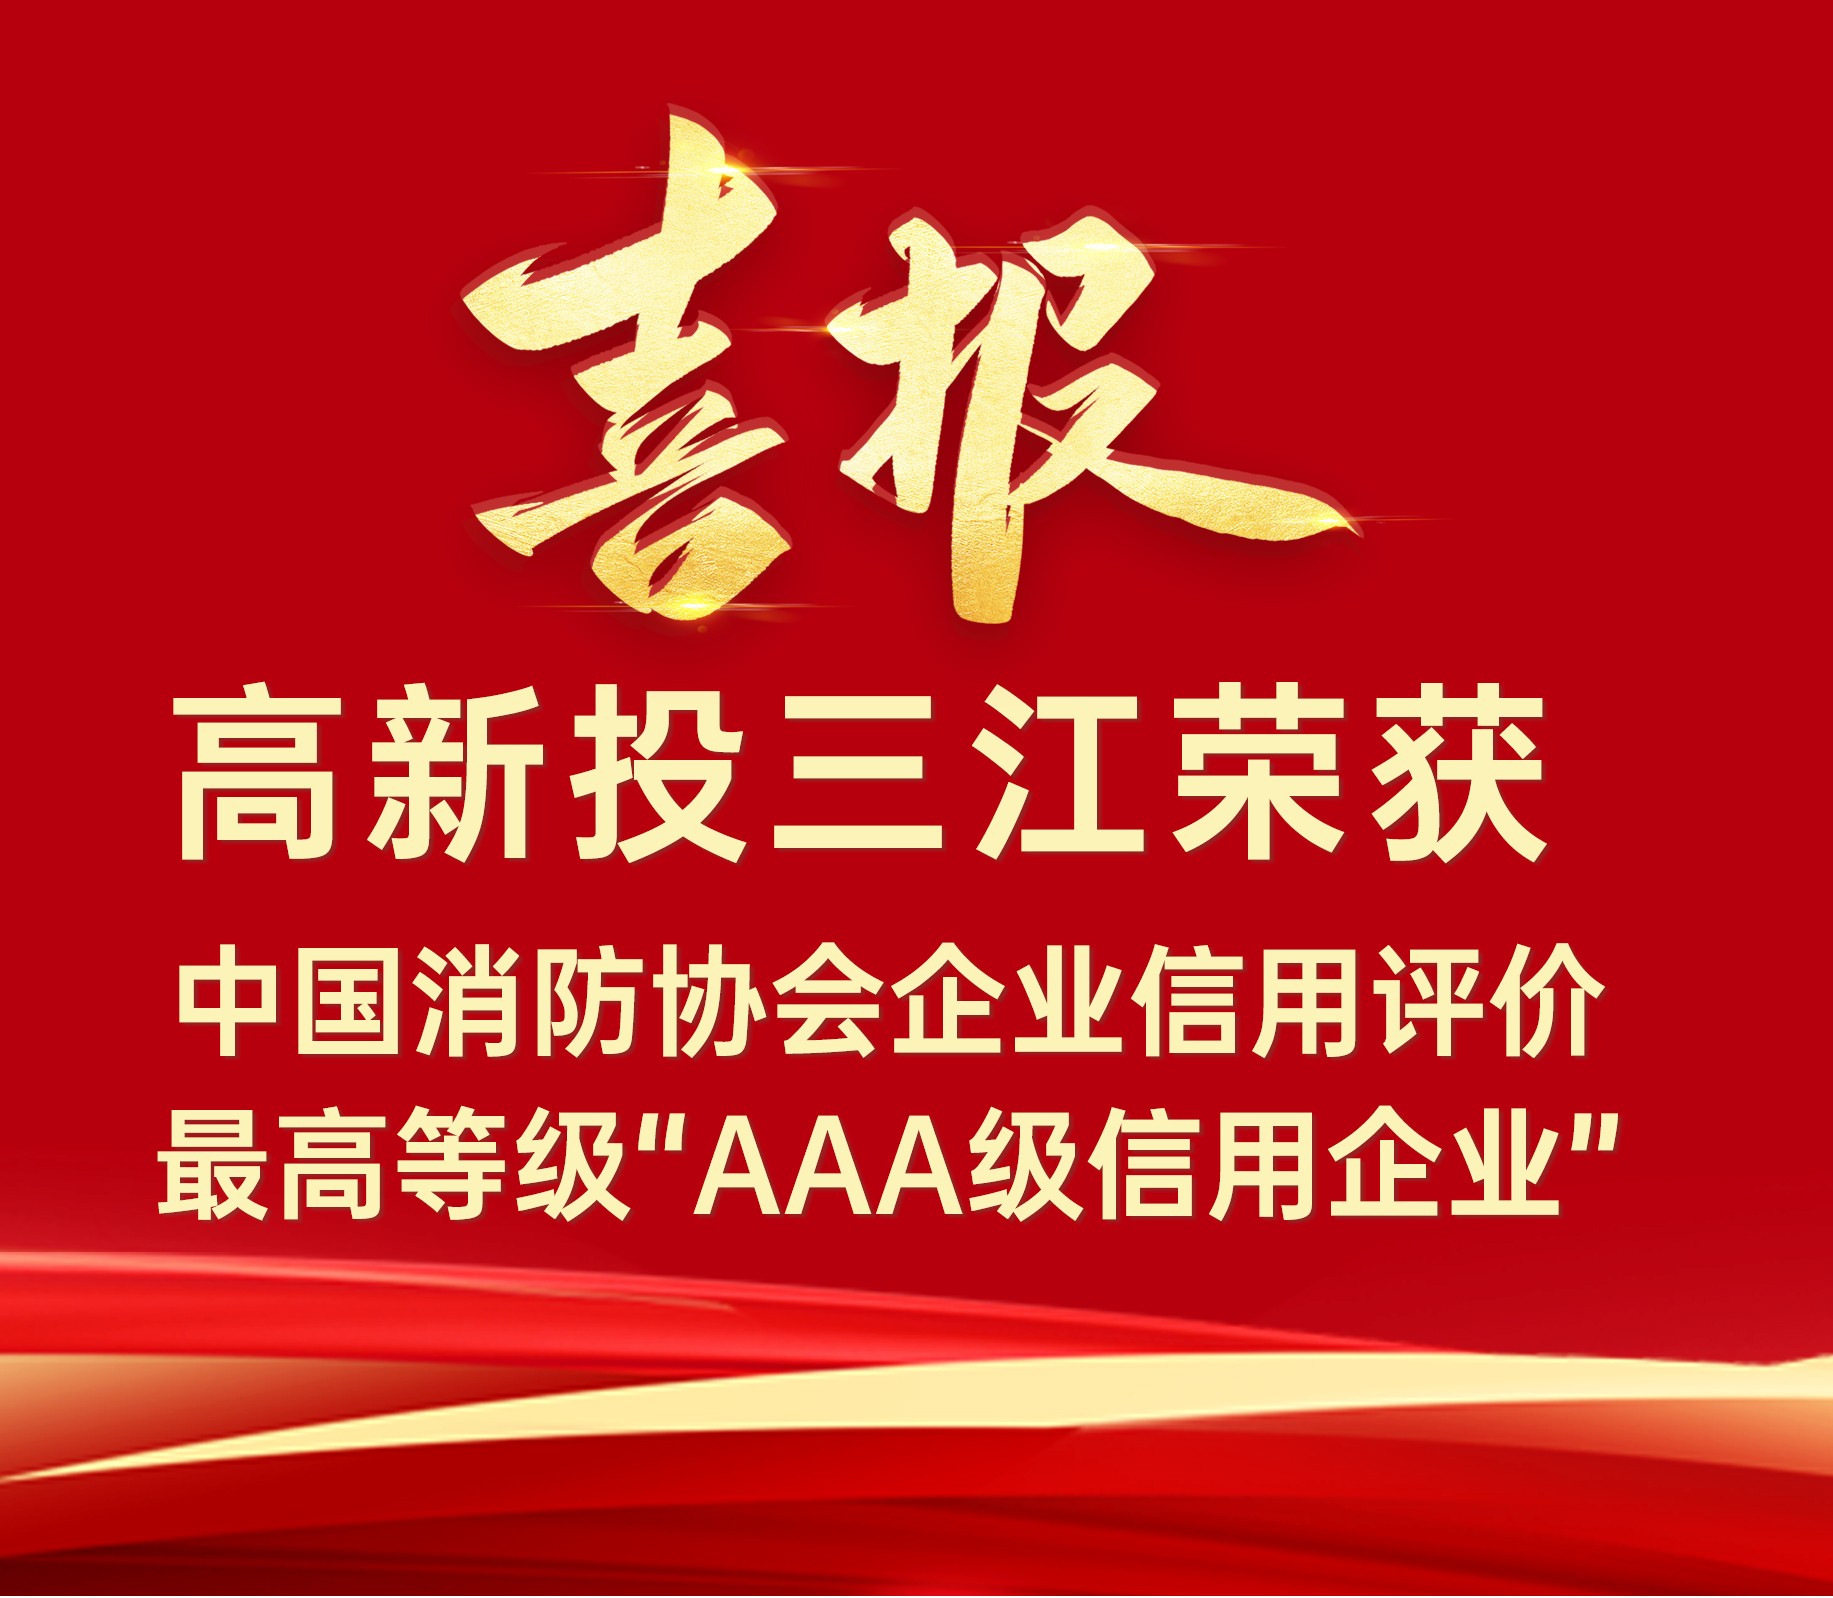 高新投三江连续荣获中国消防协会企业信用评价最高等级“AAA级信用企业”